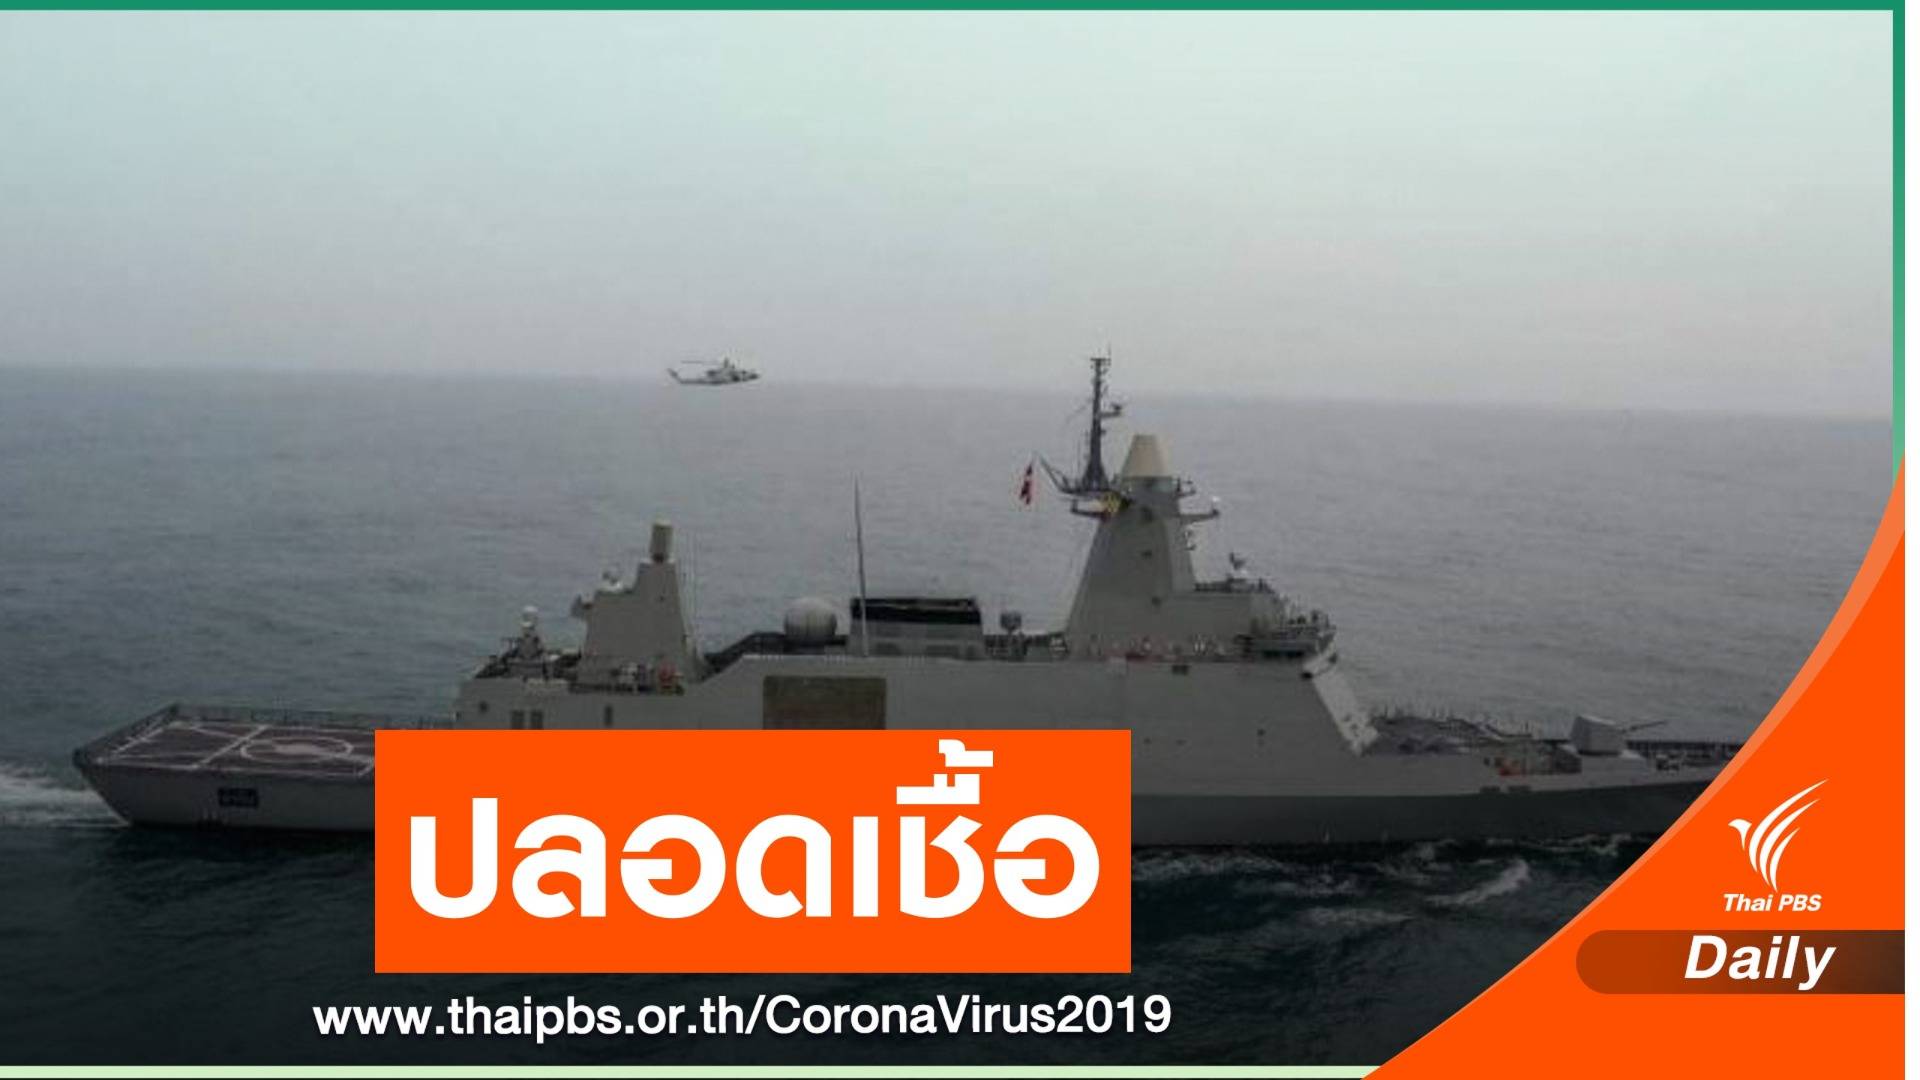 กองทัพเรือติดระบบปลอดเชื้อ หวั่น COVID-19 ระบาดในเรือรบ